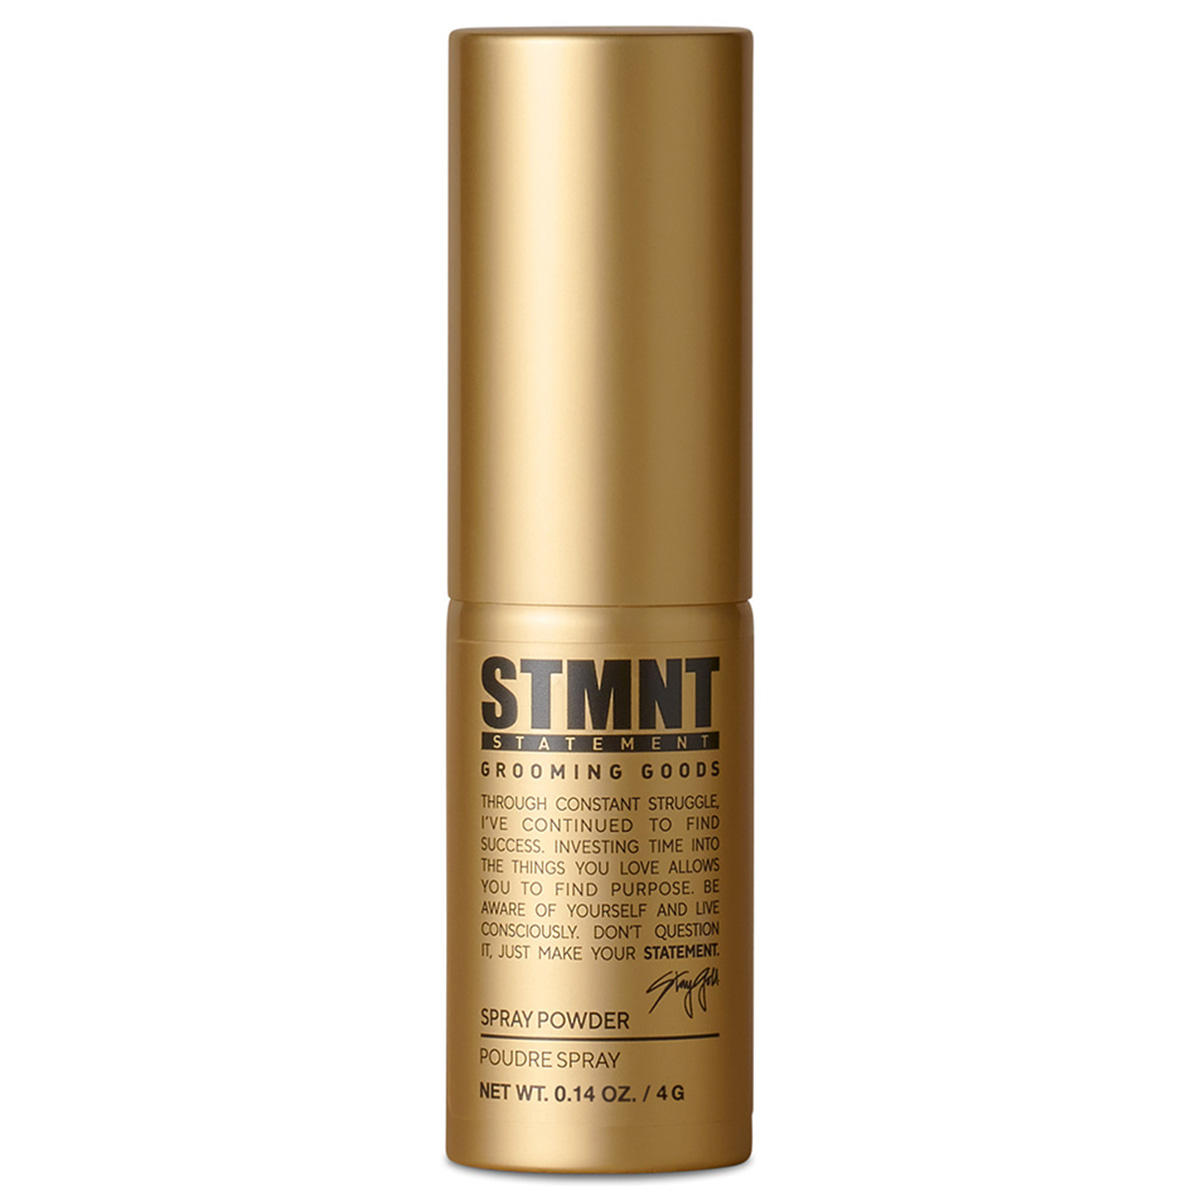 STMNT Spray Powder 4 g